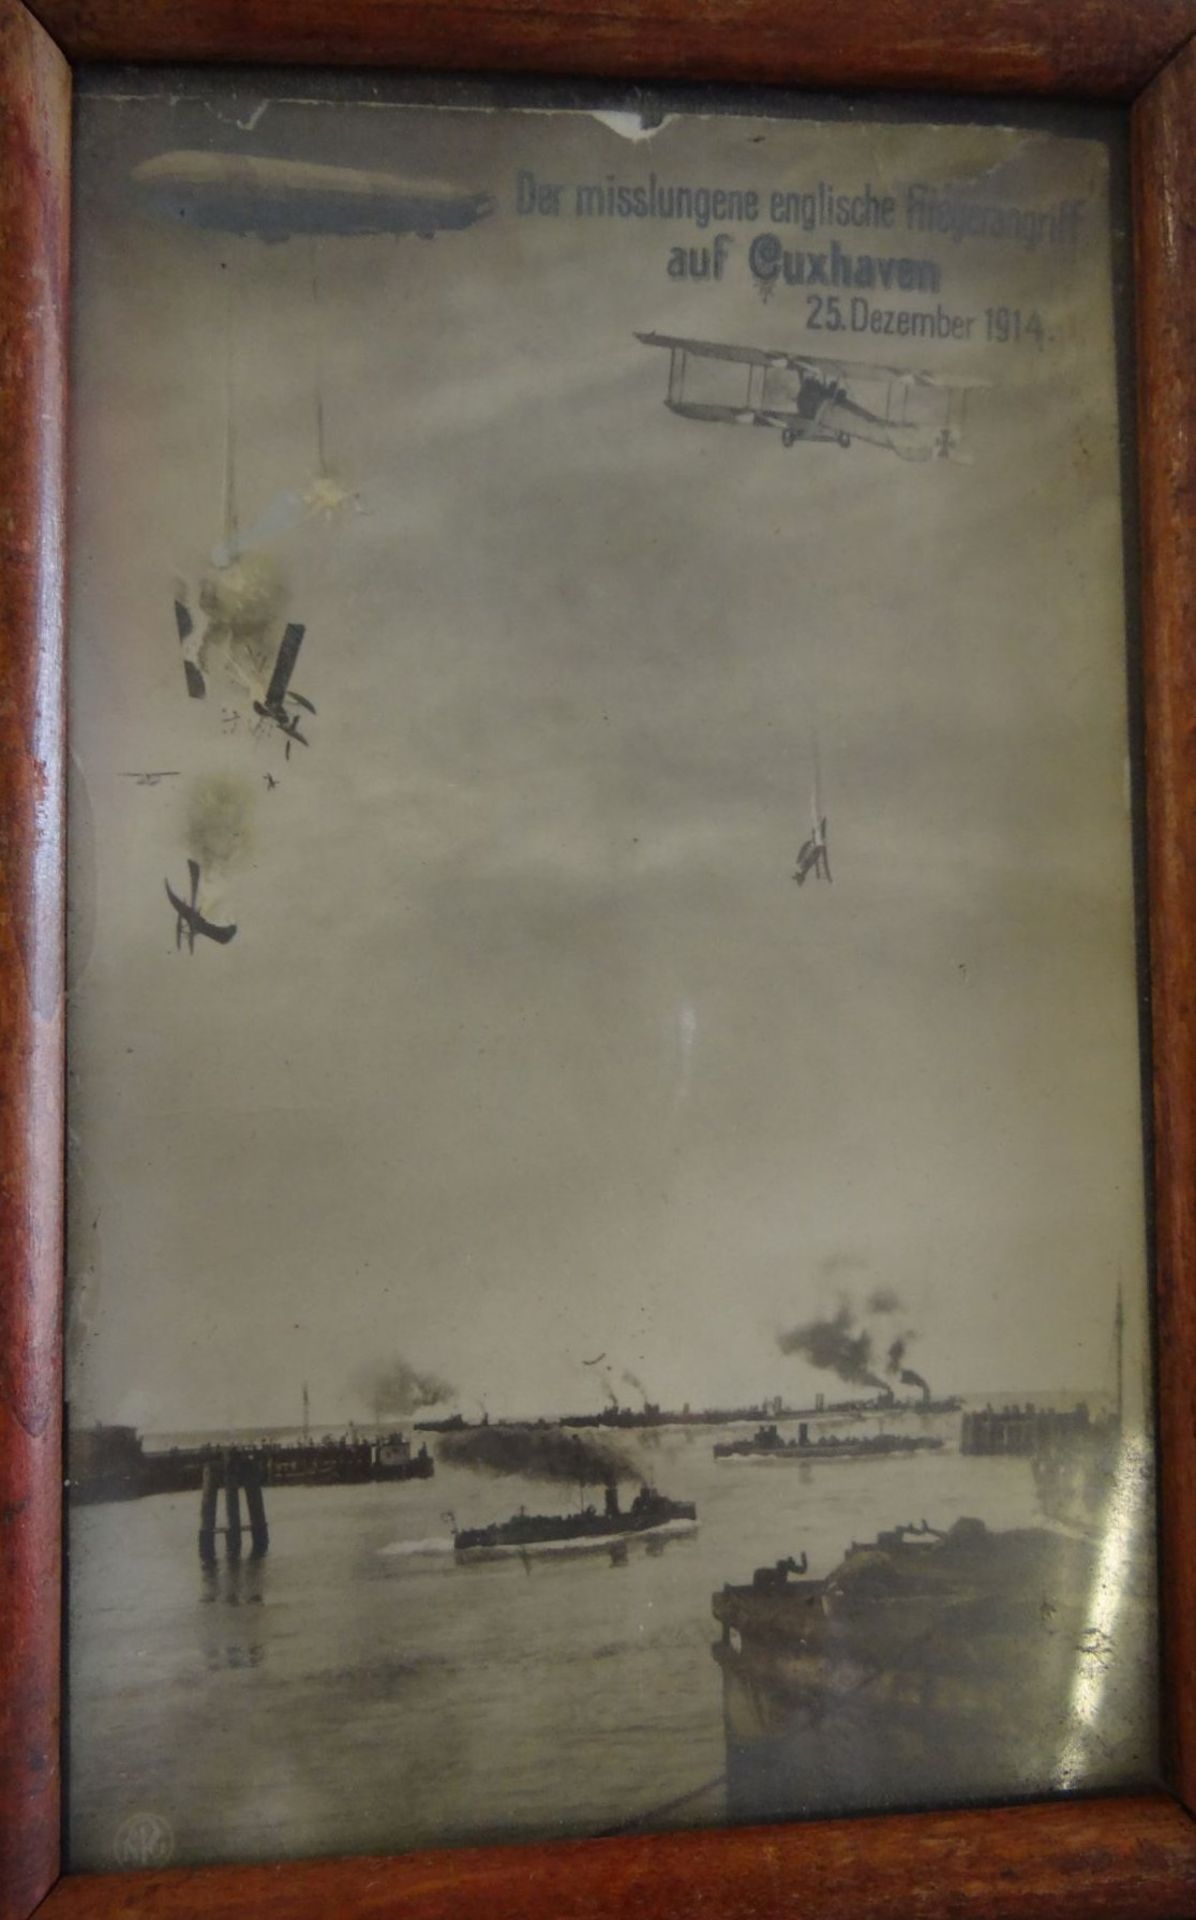 Propaganda-Postkarte "Der misslungene englische Flieger-Angriff auf Cuxhaven" 1914, ger/Glas, RG - Bild 4 aus 4